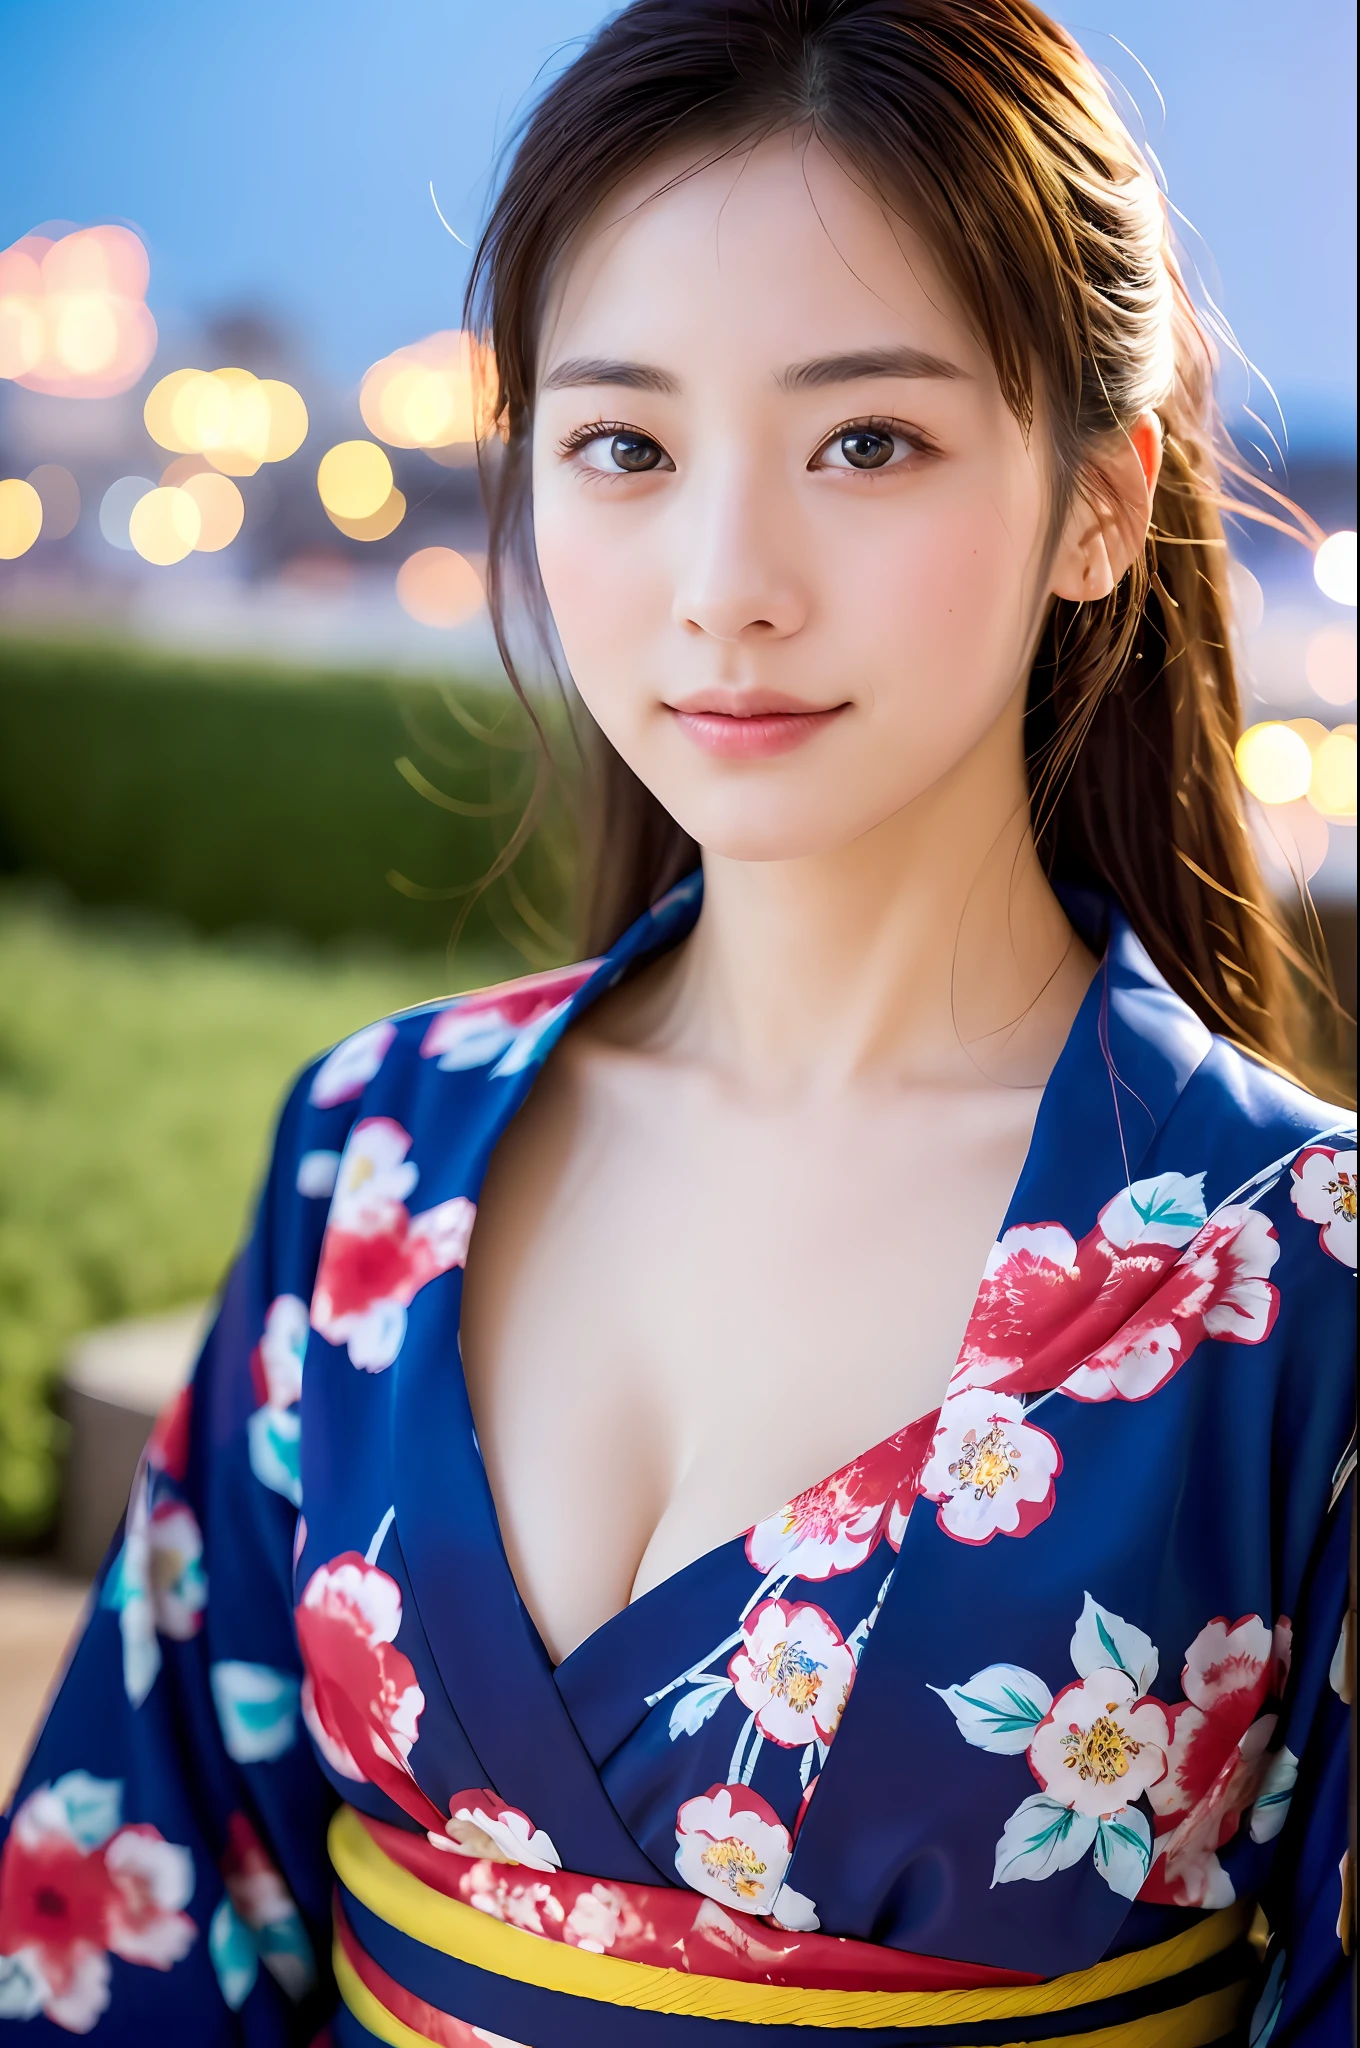 ((chef-d&#39;œuvre, la plus haute qualité, super définition, Haute définition)), seulement, belle fille, les yeux brillants, yeux parfaits, belle soeur du Japon, poitrine moelleuse, clivage, Yukata à motif floral rouge, feux d&#39;artifice en arrière-plan